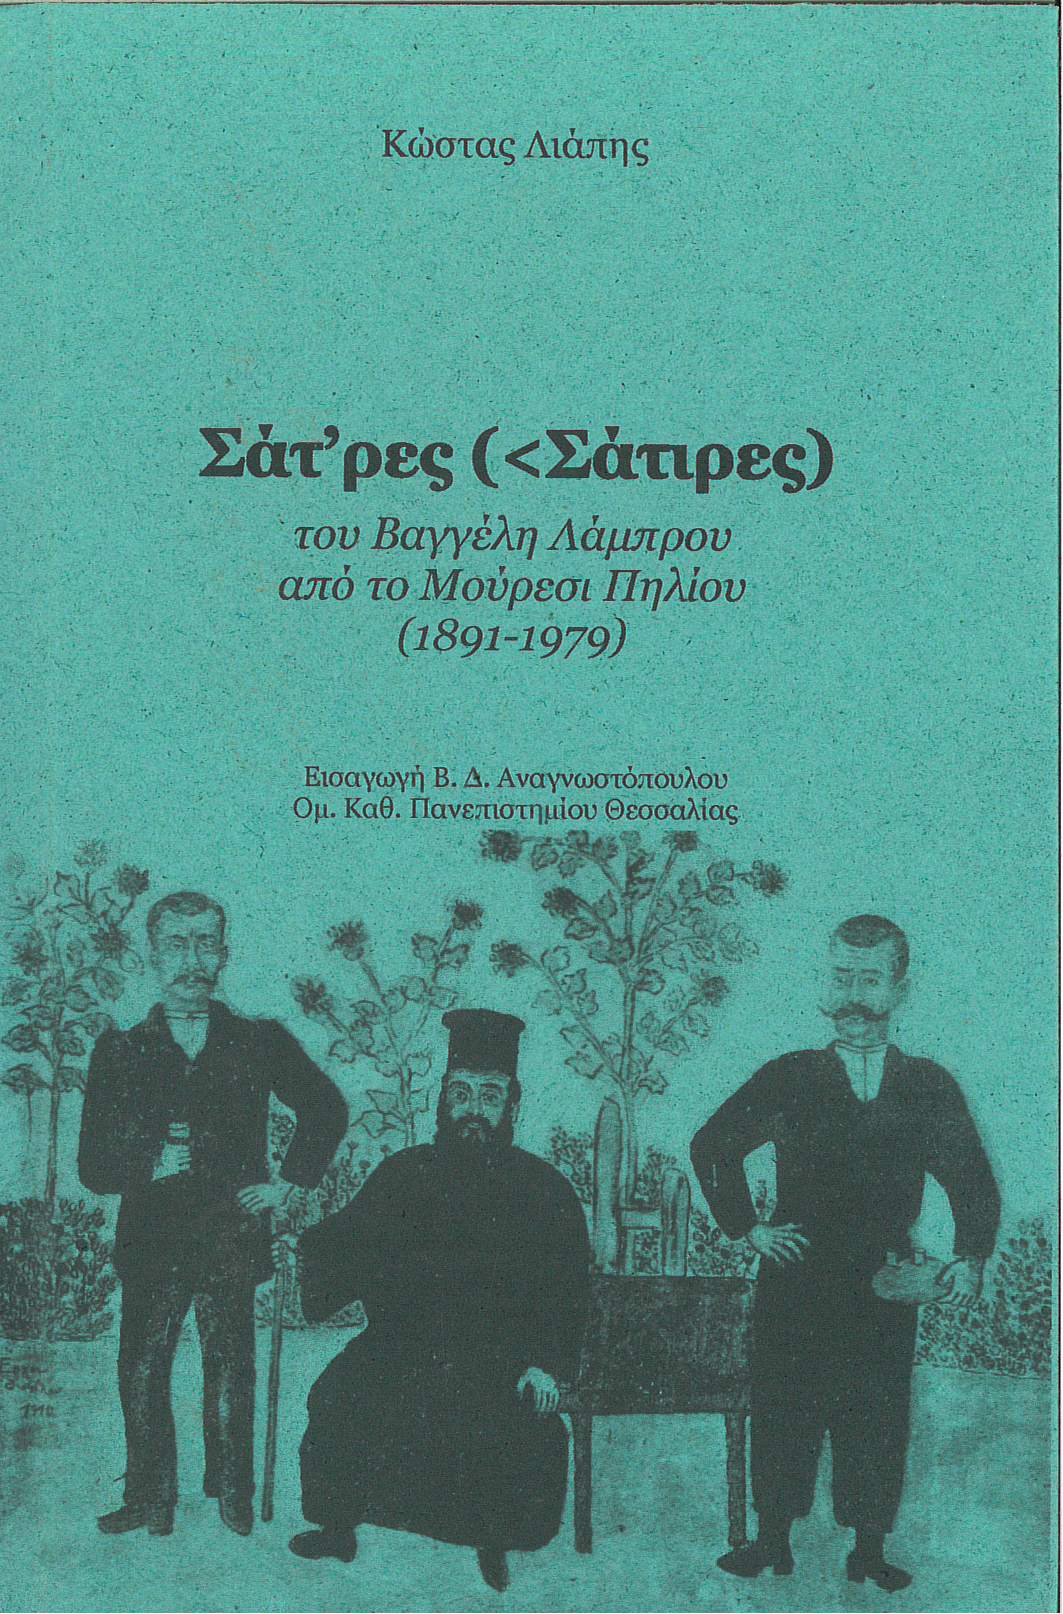 Σάτρες (<Σάτιρες) του Βαγγέλη Λάμπρου από το Μούρεσι Πηλίου (1891-1979)